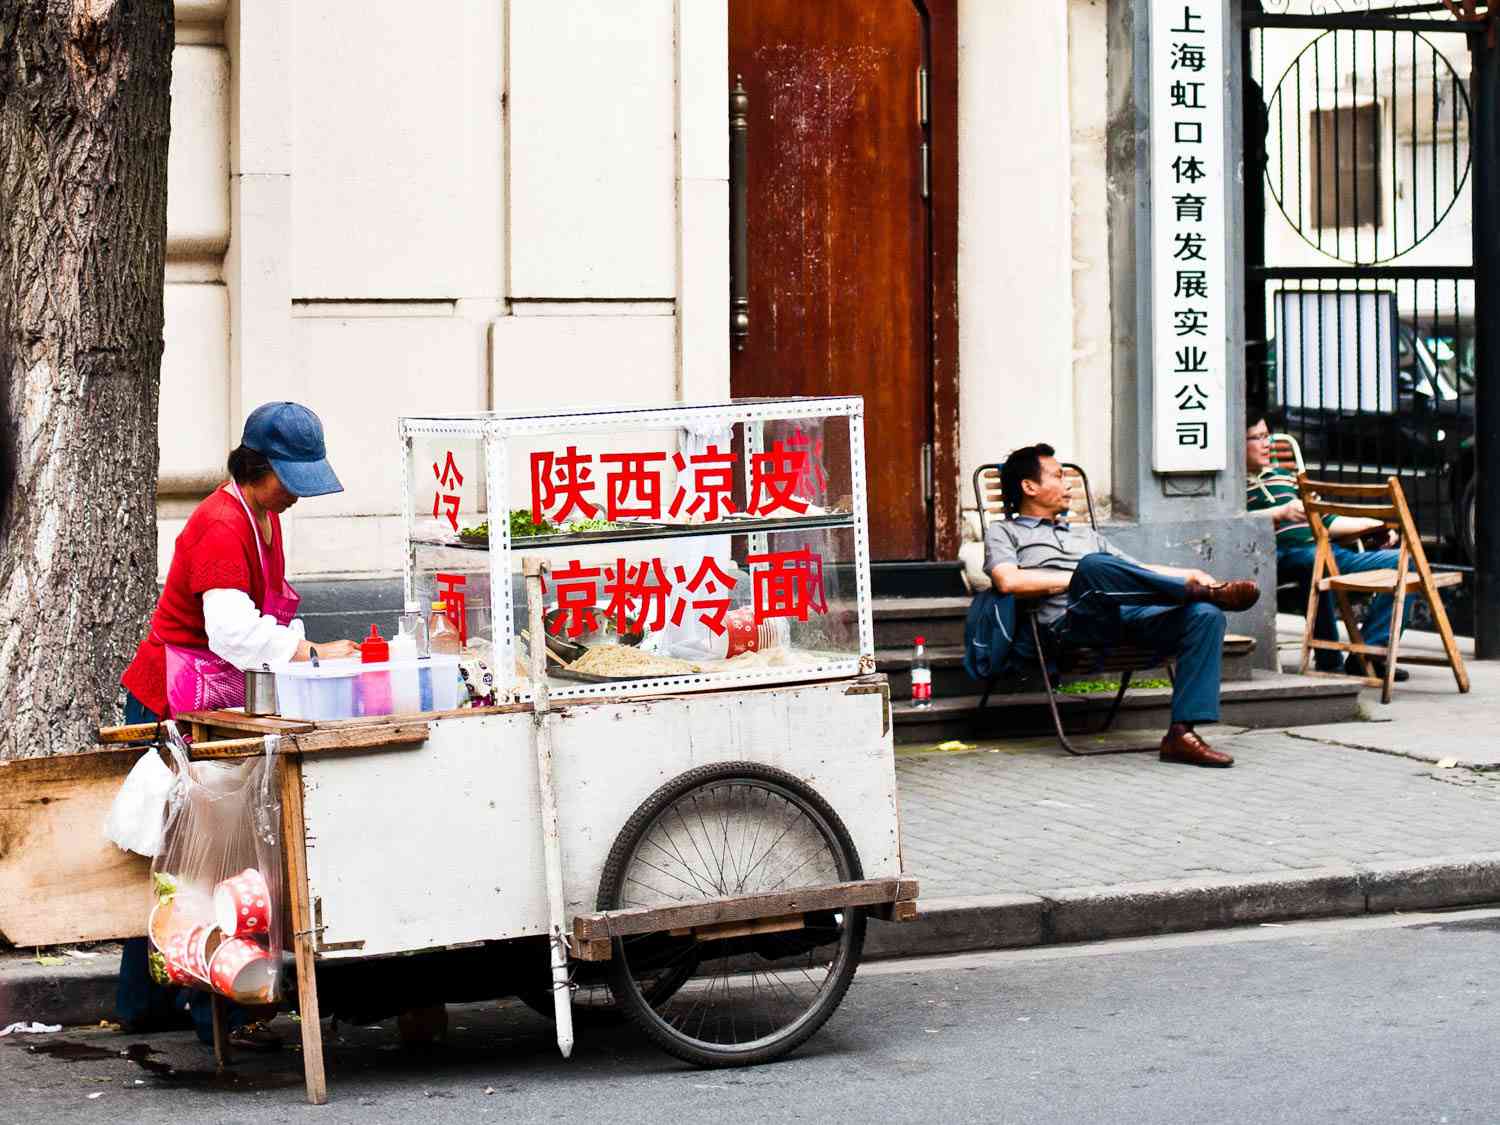 20150523 -上海- streetfood fionareilly intro02.jpg——幻灯片